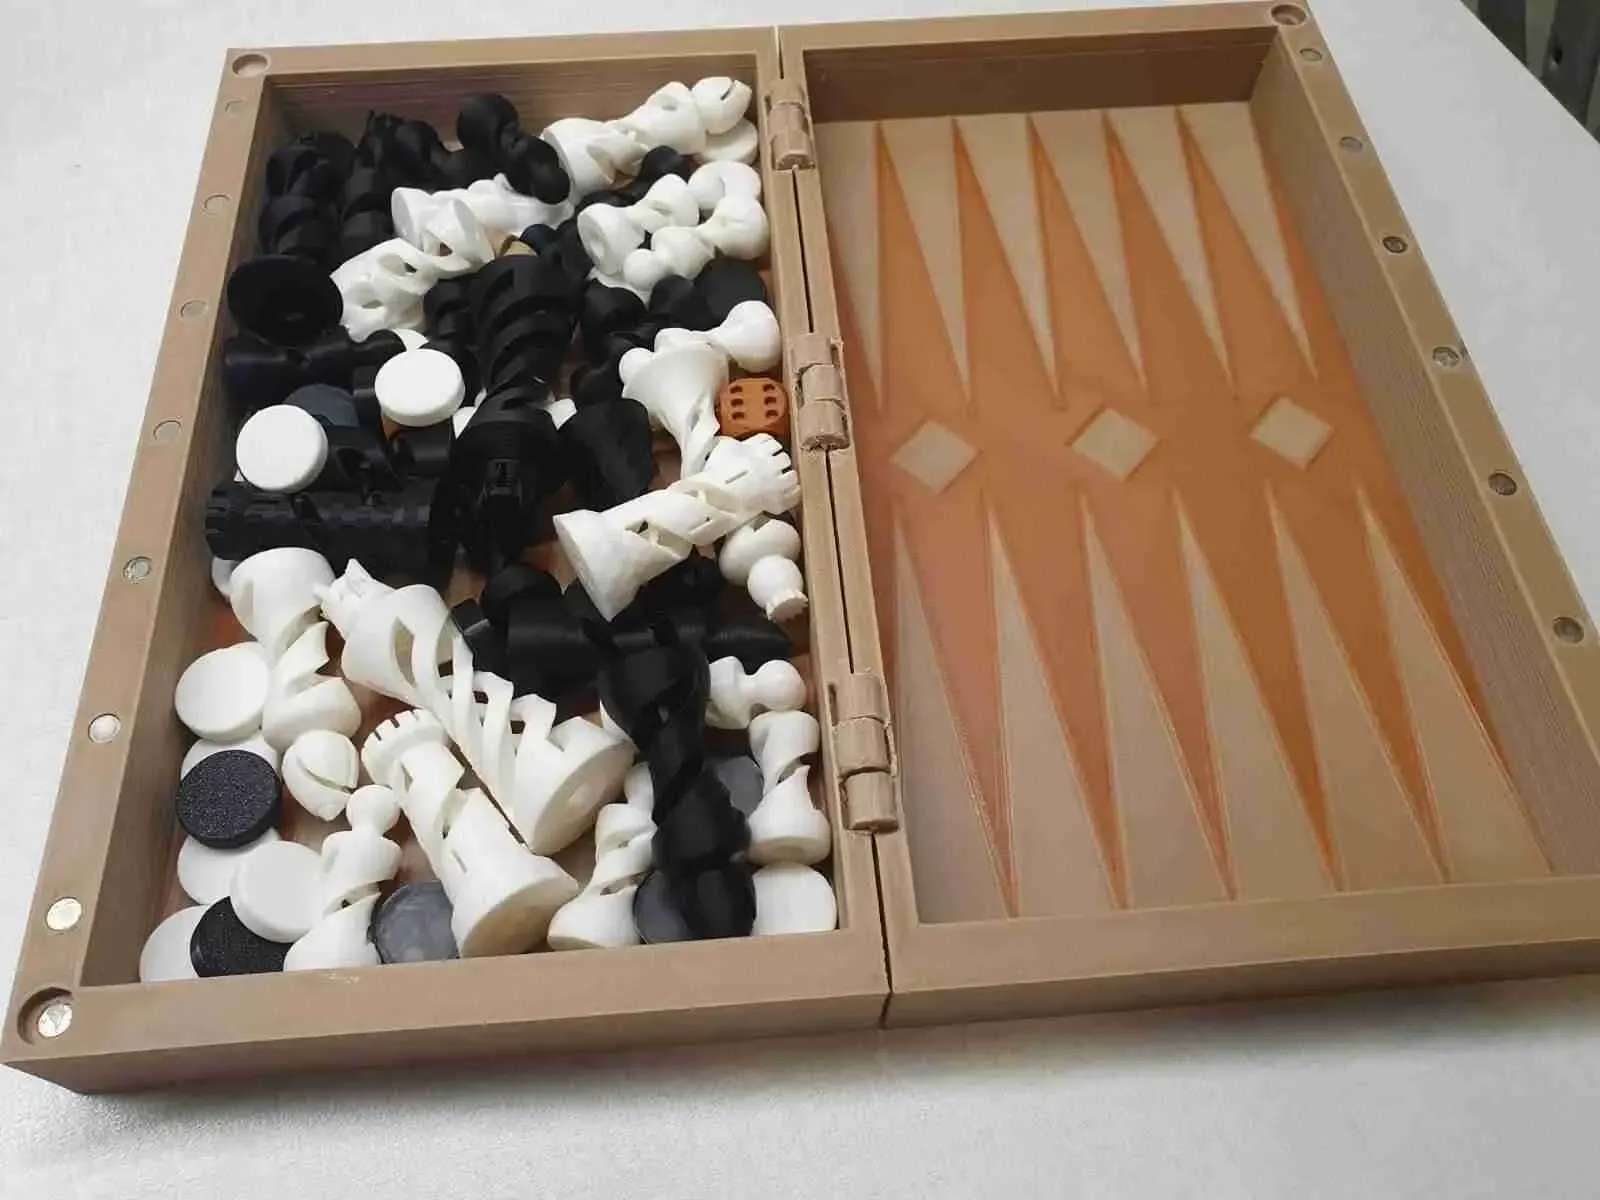 backgammon, checkers & chess board